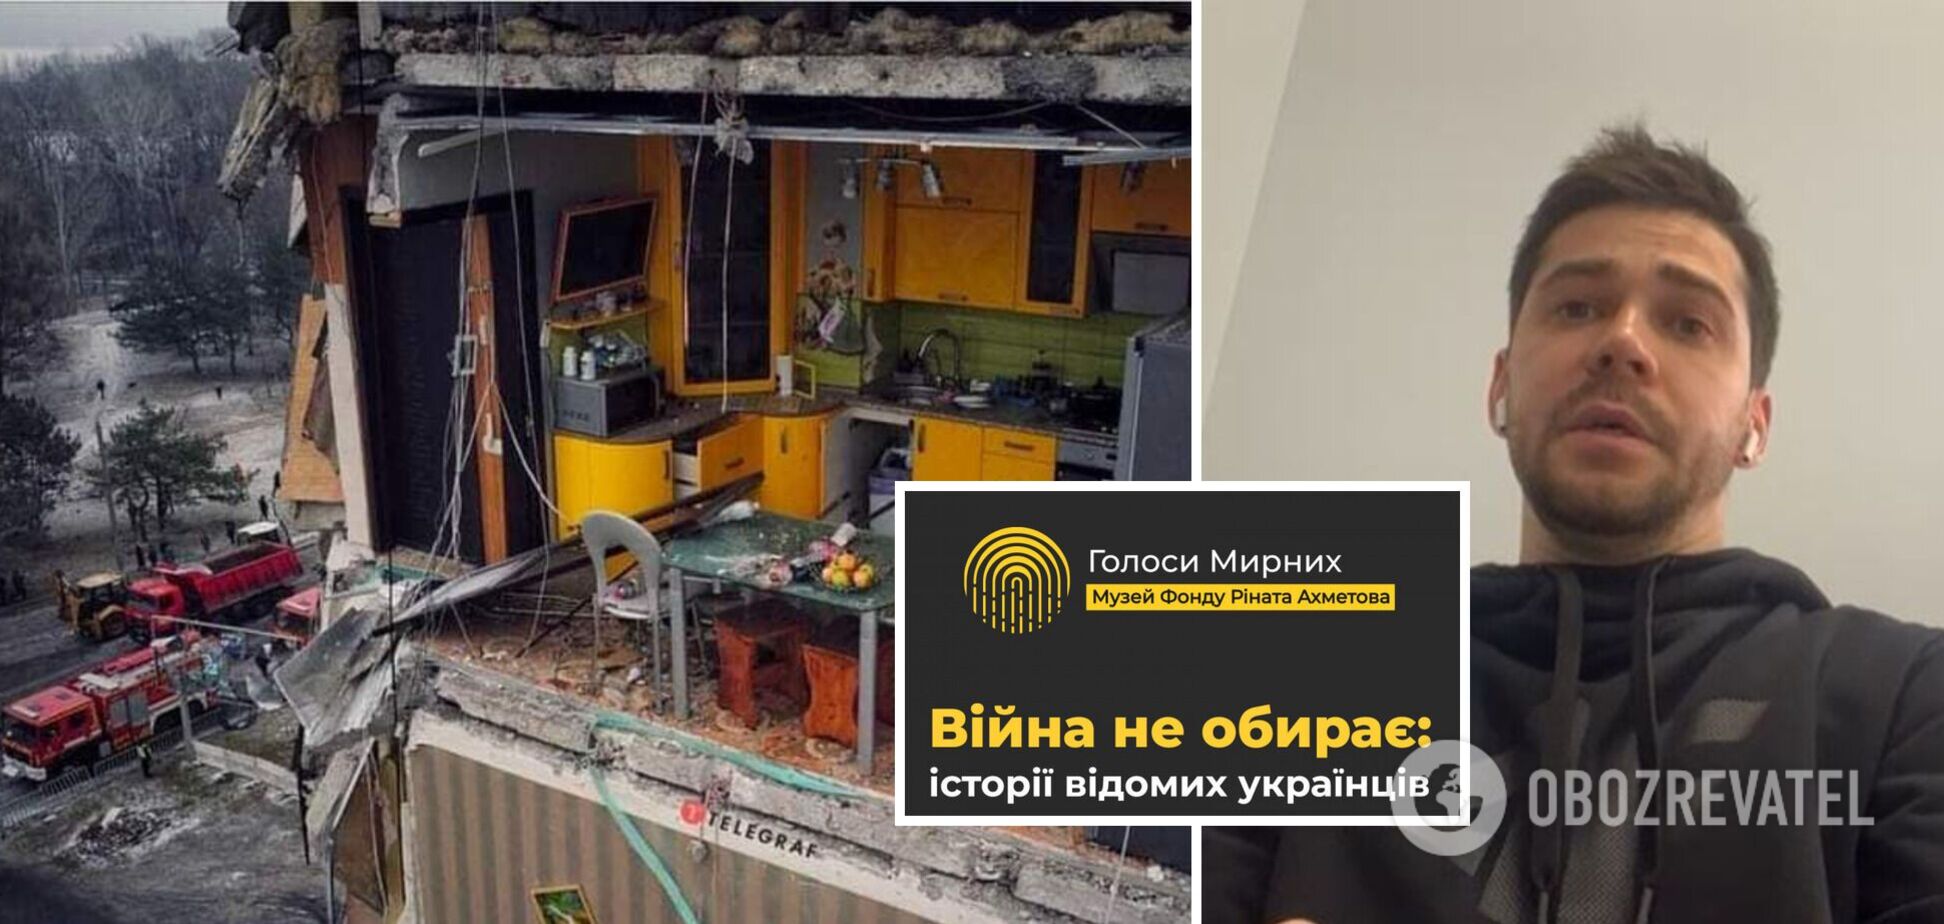 Встречались на желтой кухне: новая история из Днепра в музее 'Голоса Мирных'